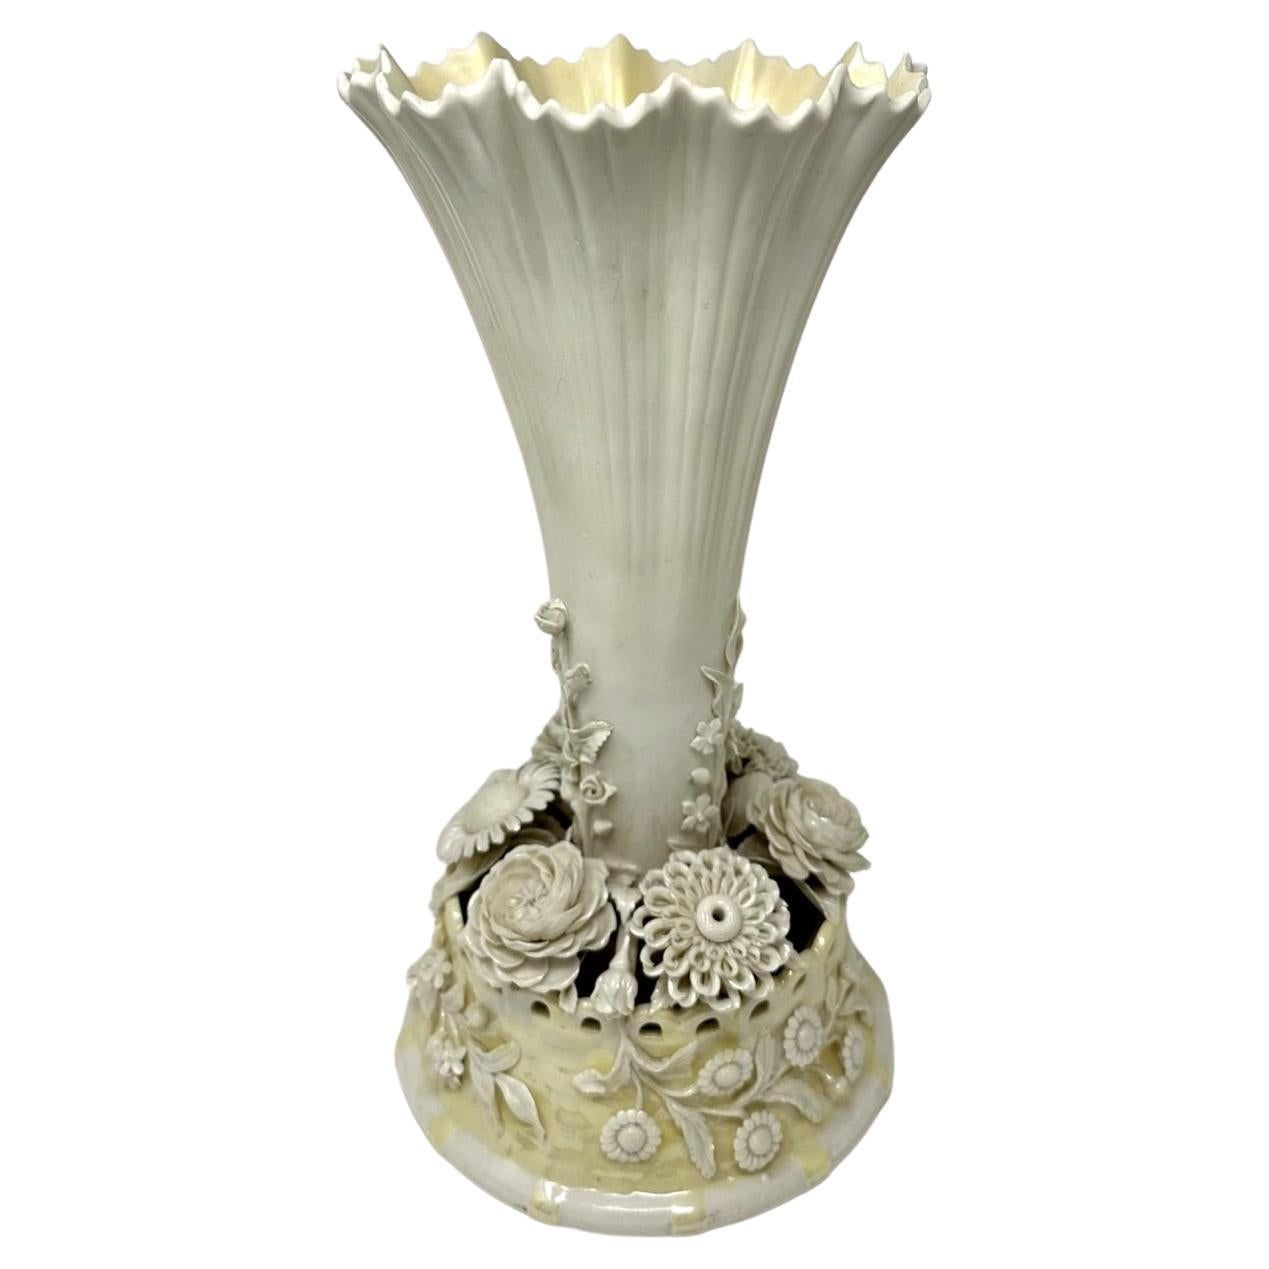 Antique Irish Belleek Porcelain Trumpet Centerpiece Vase Urn 1926-1946 Ireland For Sale